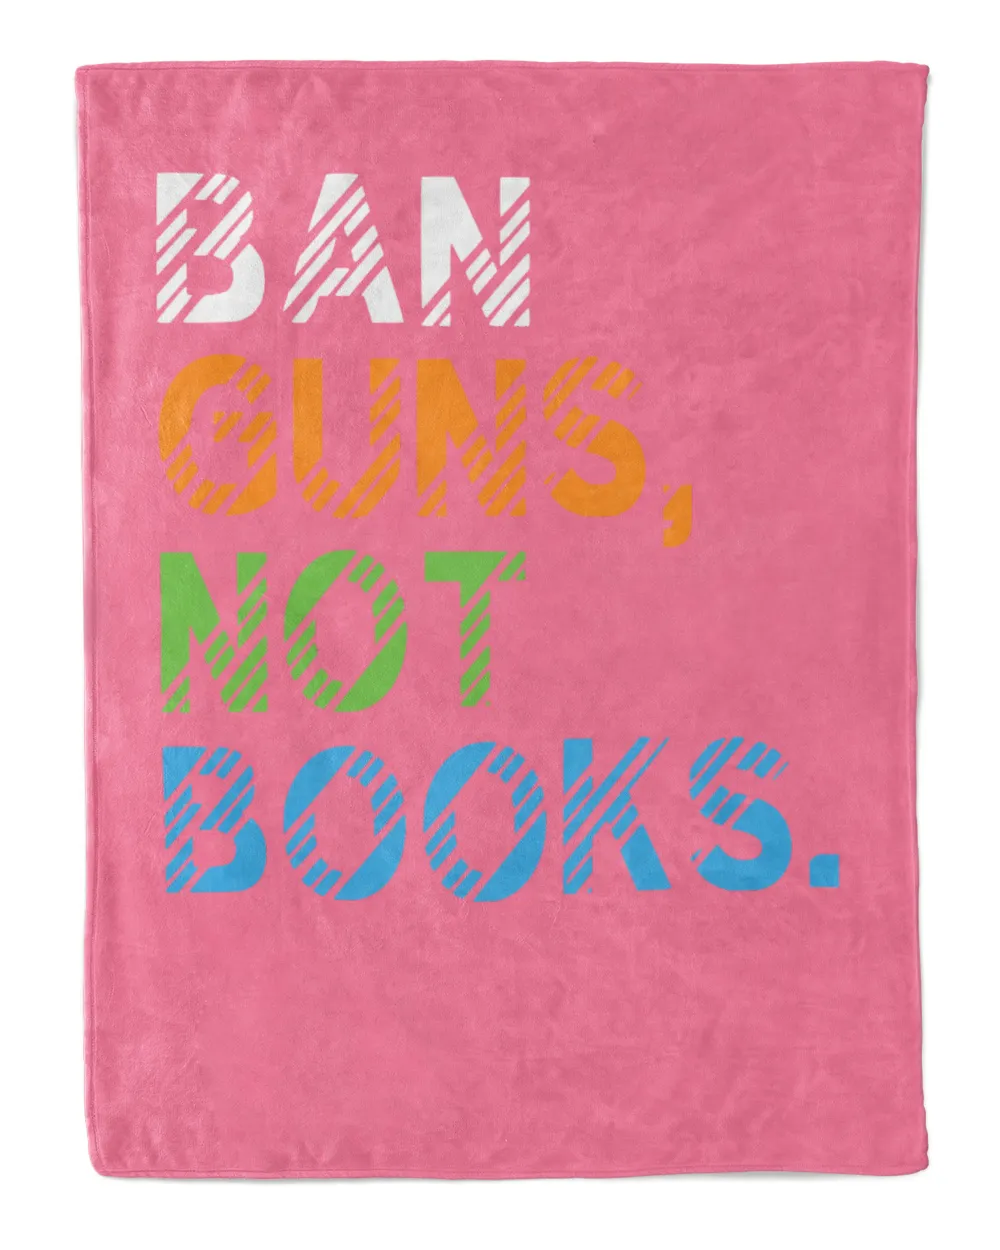 Ban Guns Not Book